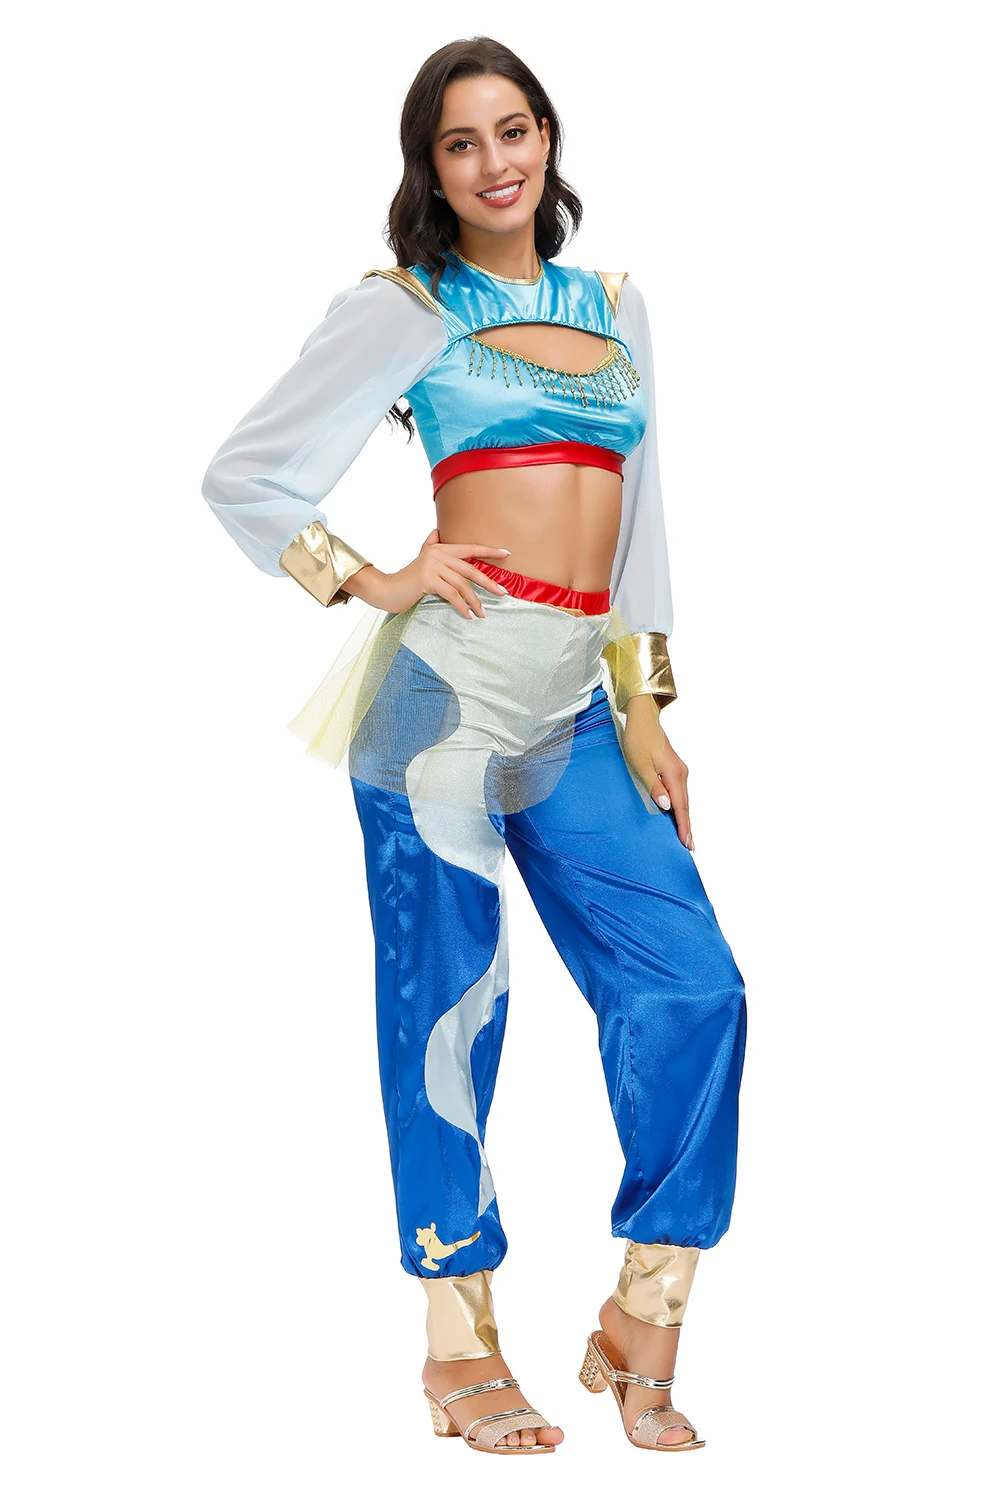 Aladdin Víla Princezná Jasmine Kostým pre Dospelých Žien Halloween Karneval Cosplay Party Zdobiť